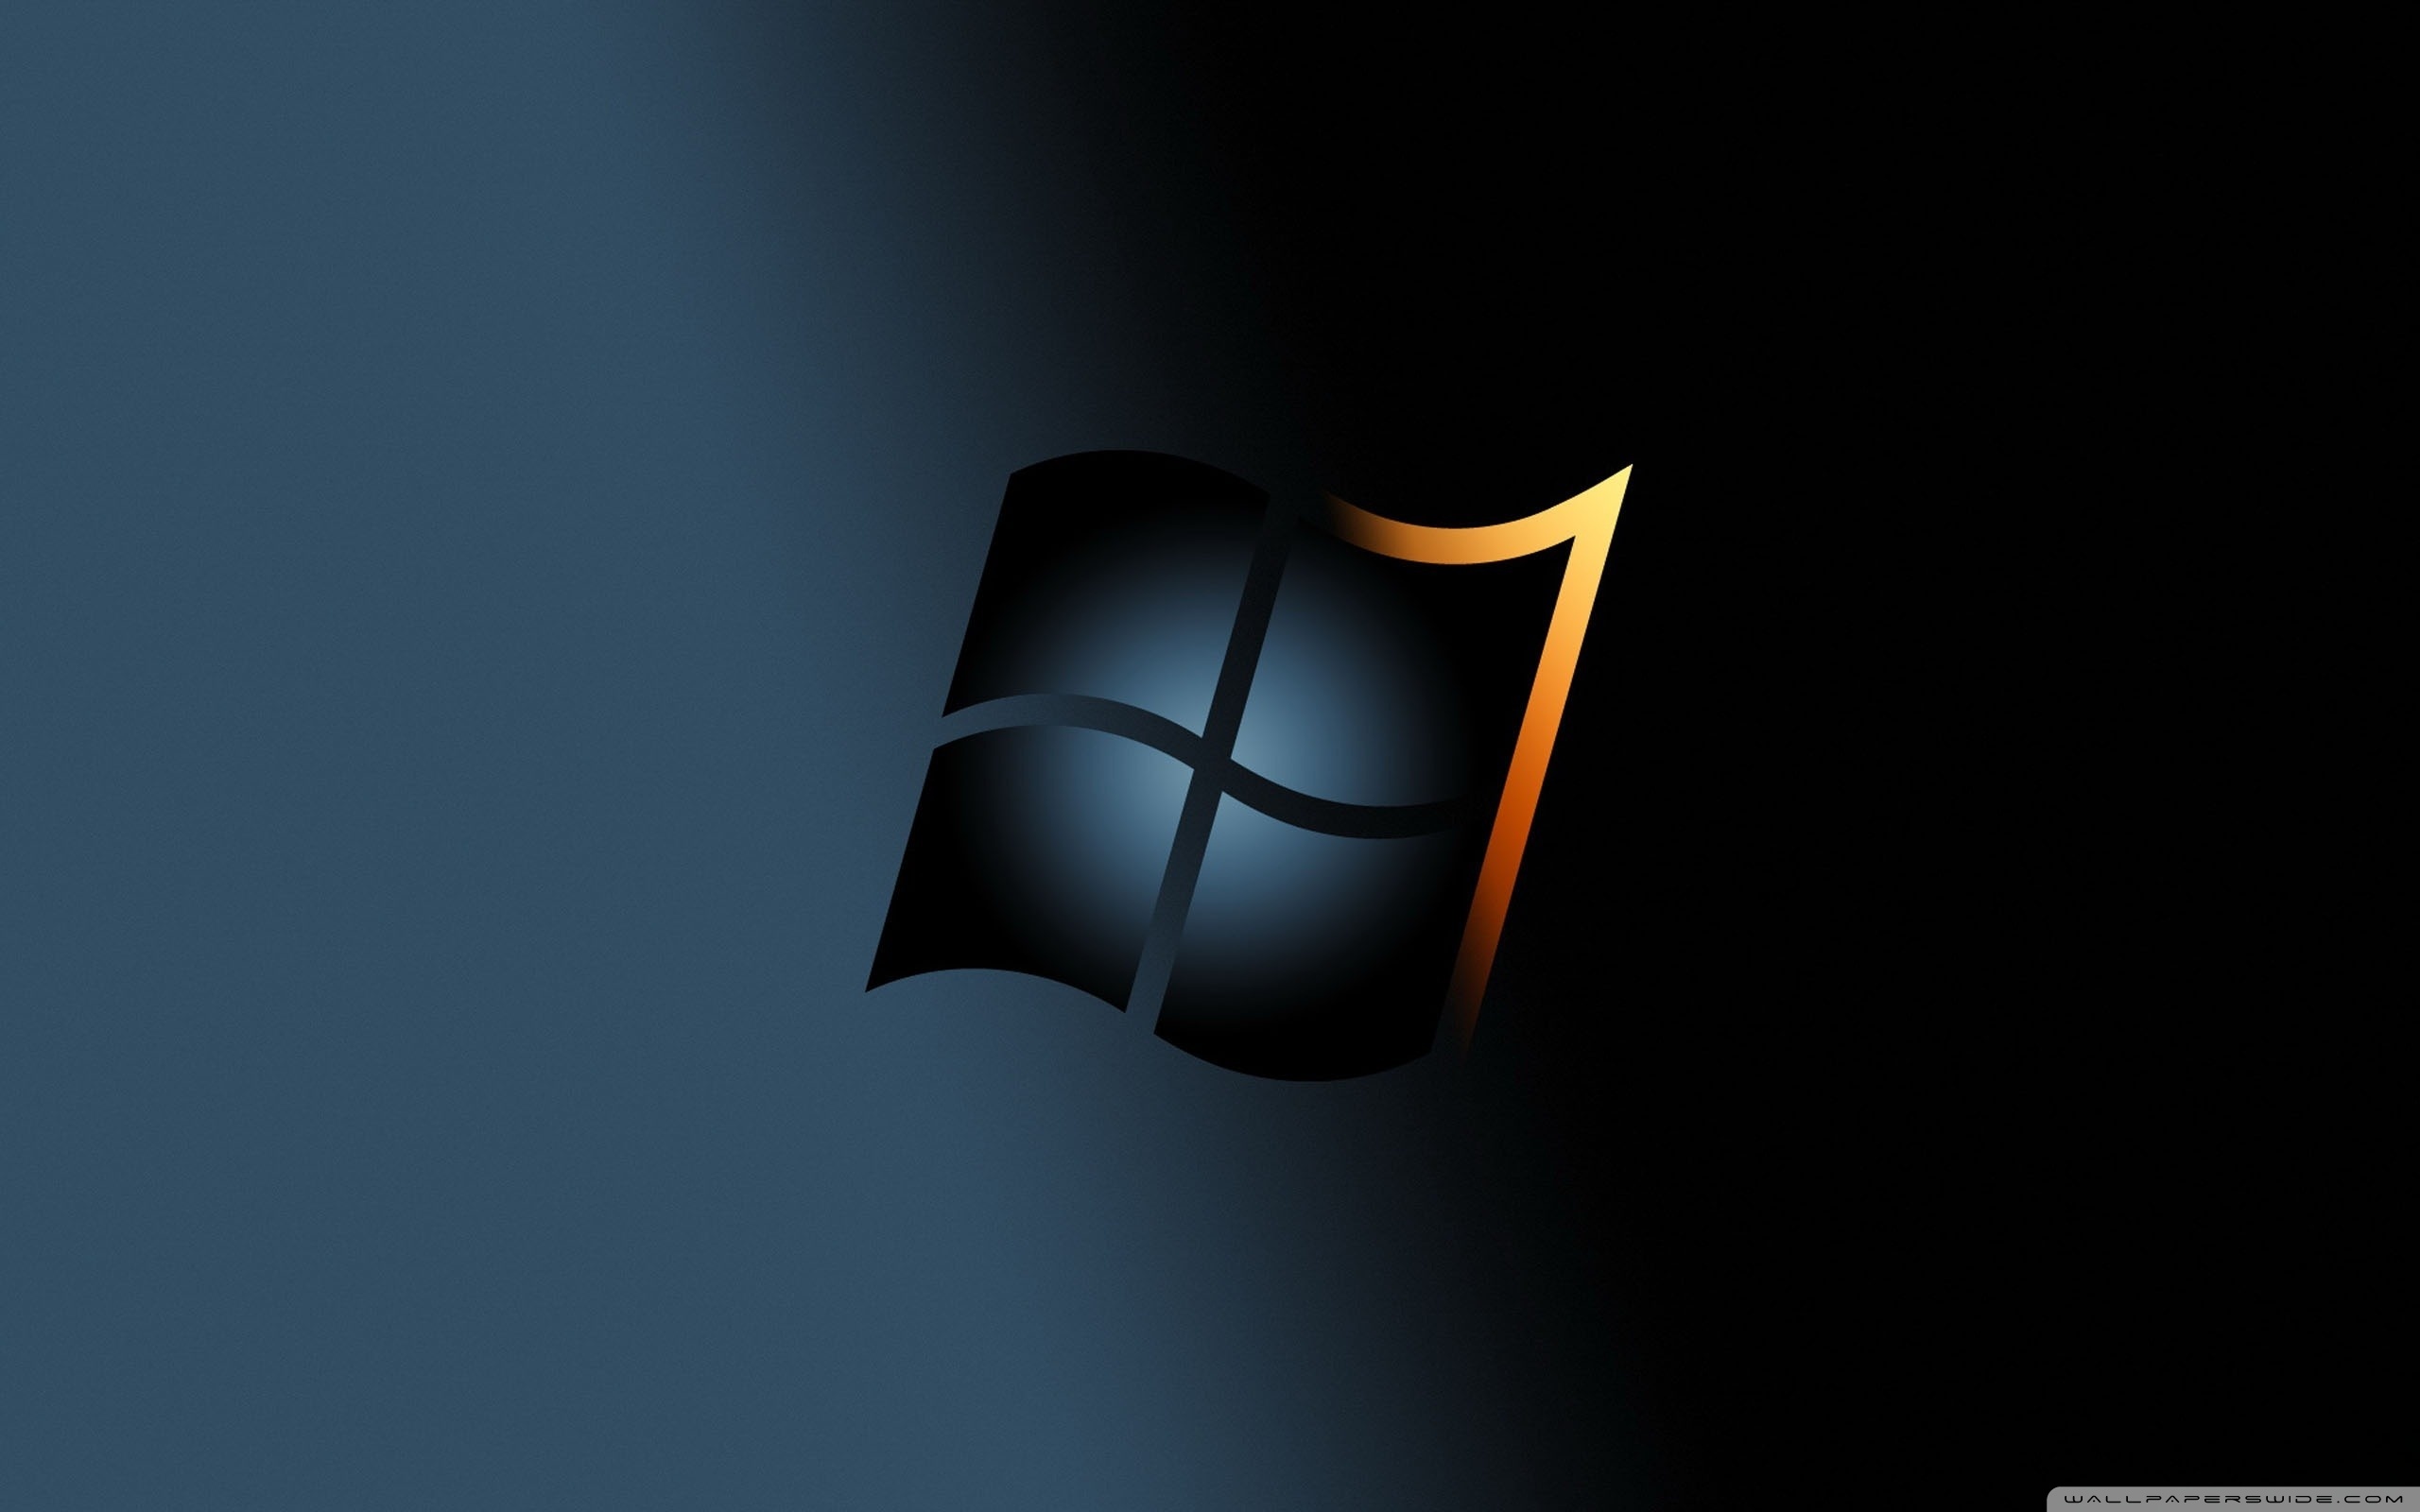 Ảnh nền Windows 7: Tìm kiếm ảnh nền Windows 7 đẹp và thú vị để làm nổi bật màn hình desktop của mình? Chúng tôi có một bộ sưu tập đầy đủ các ảnh nền độc đáo và phù hợp với các sở thích khác nhau của người dùng. Hãy truy cập trang web của chúng tôi để tìm kiếm ngay!